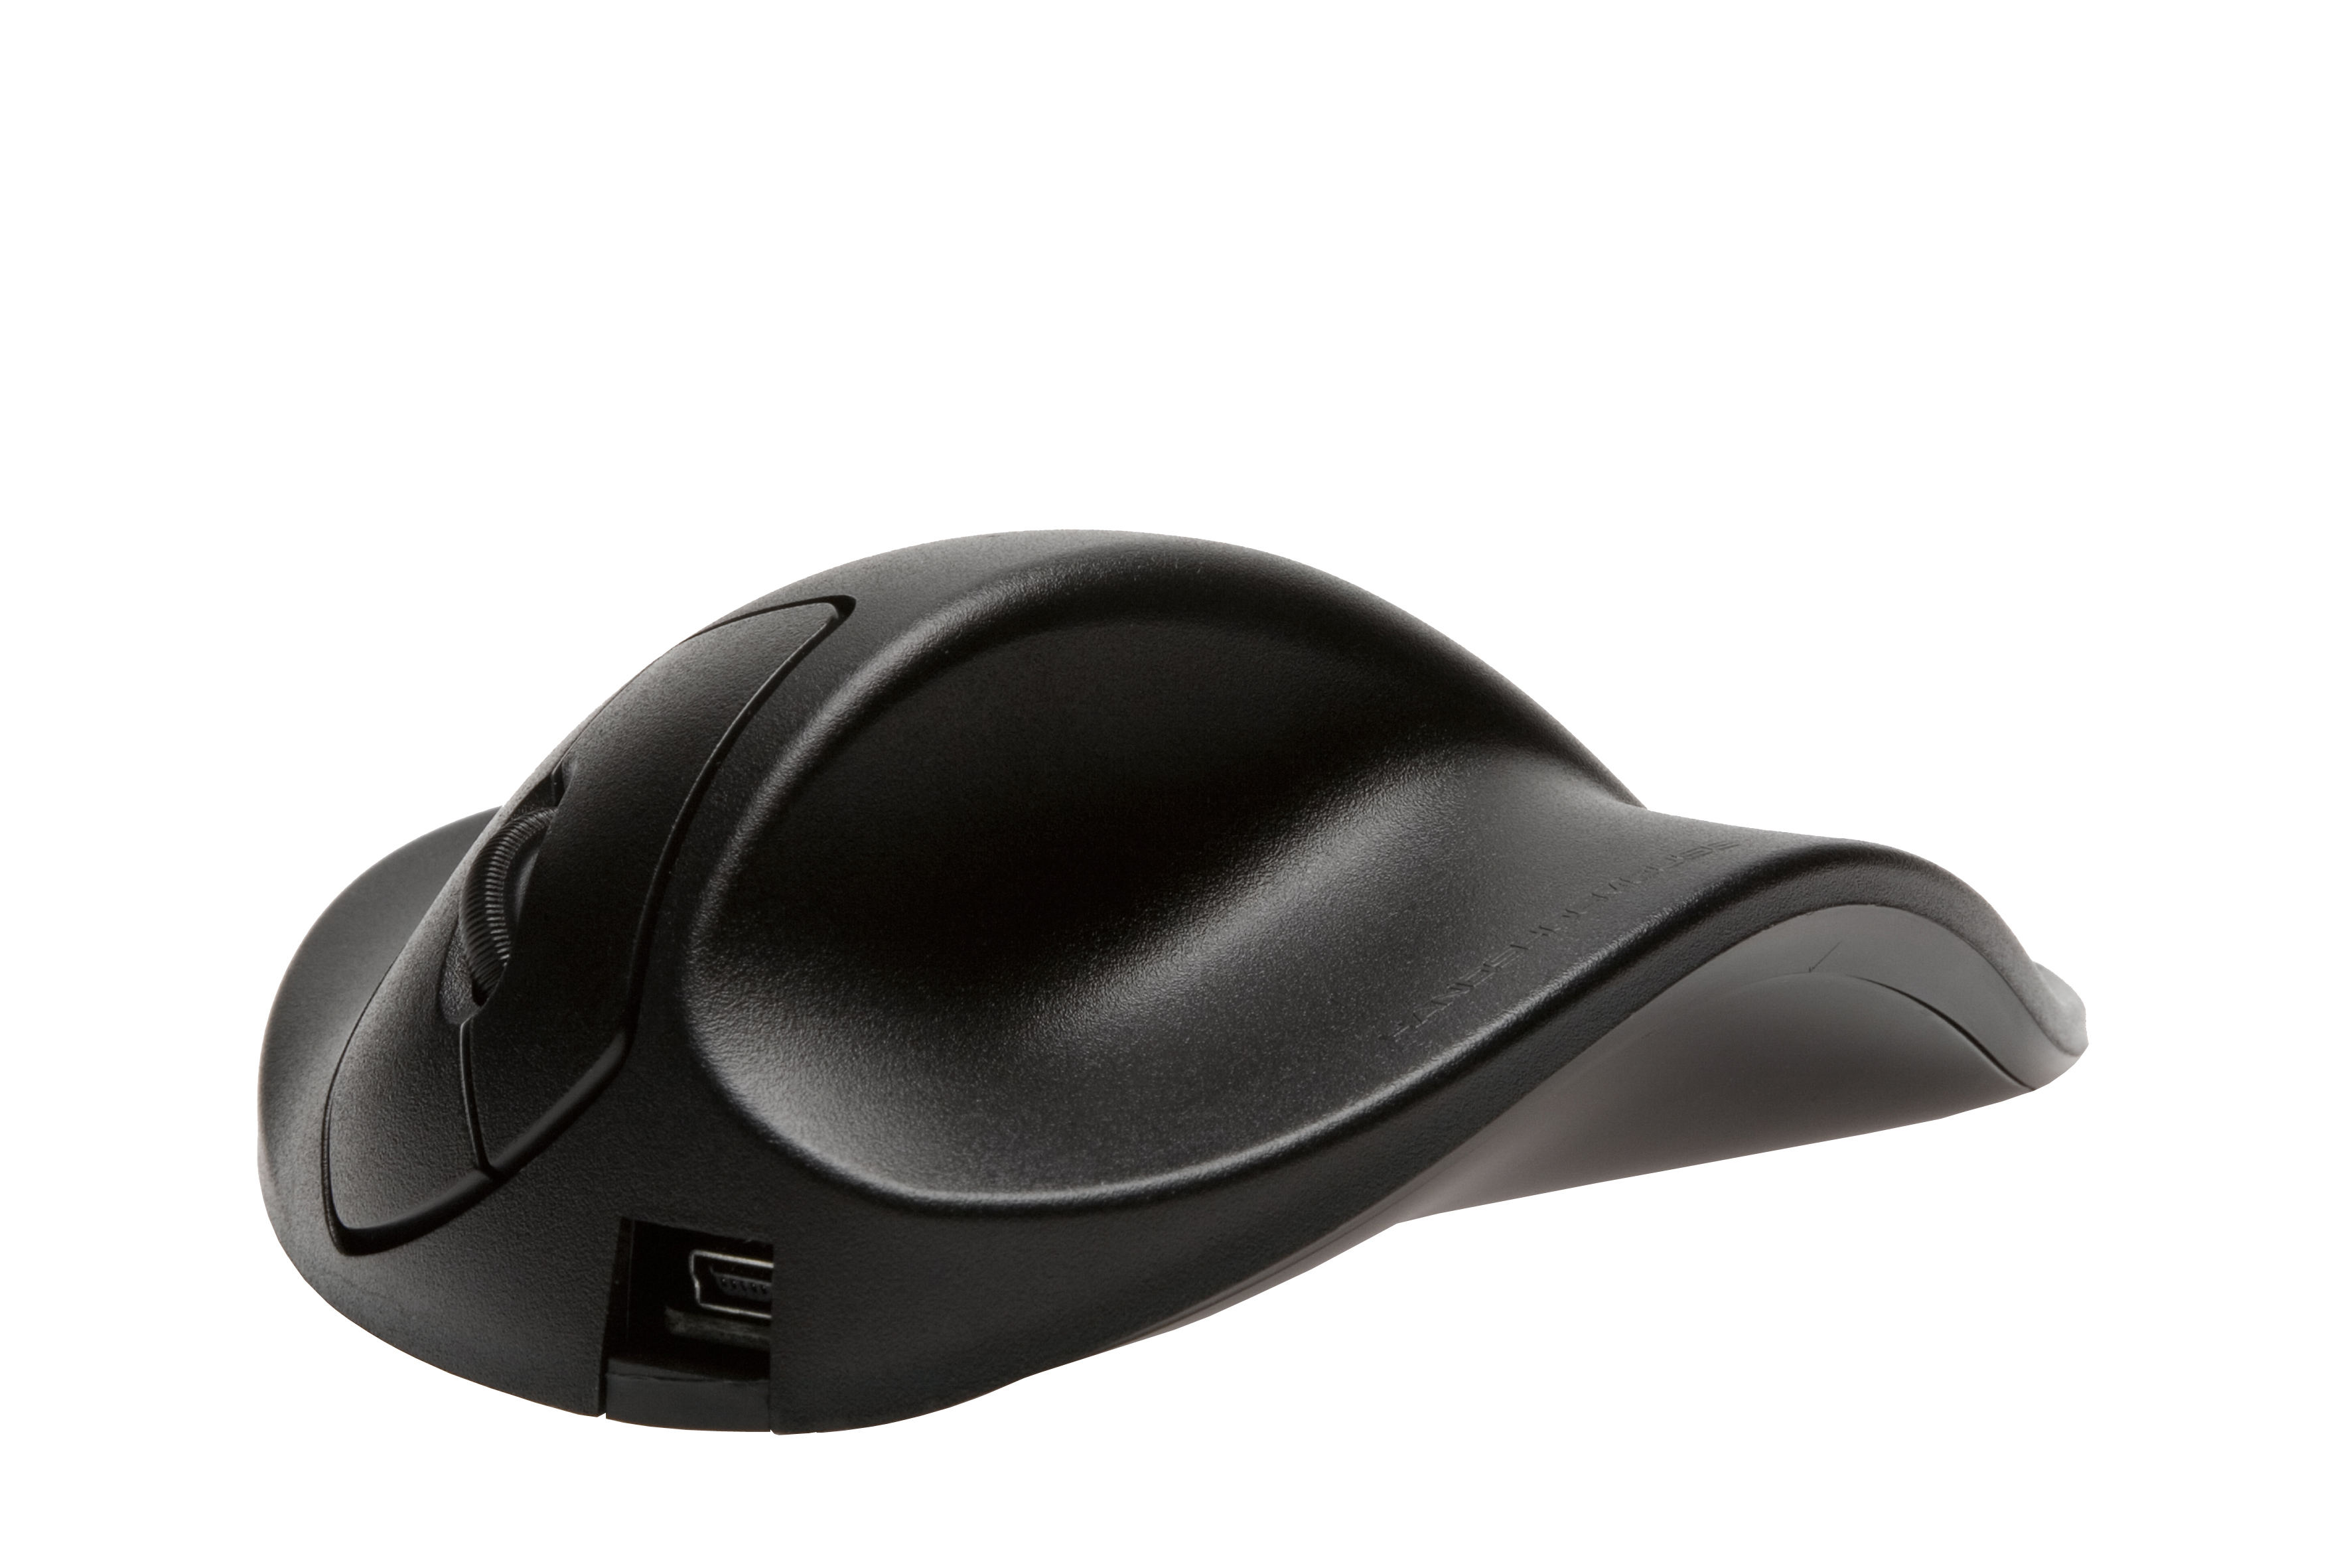 schwarz Maus, ergonomische LM2WL HIPPUS